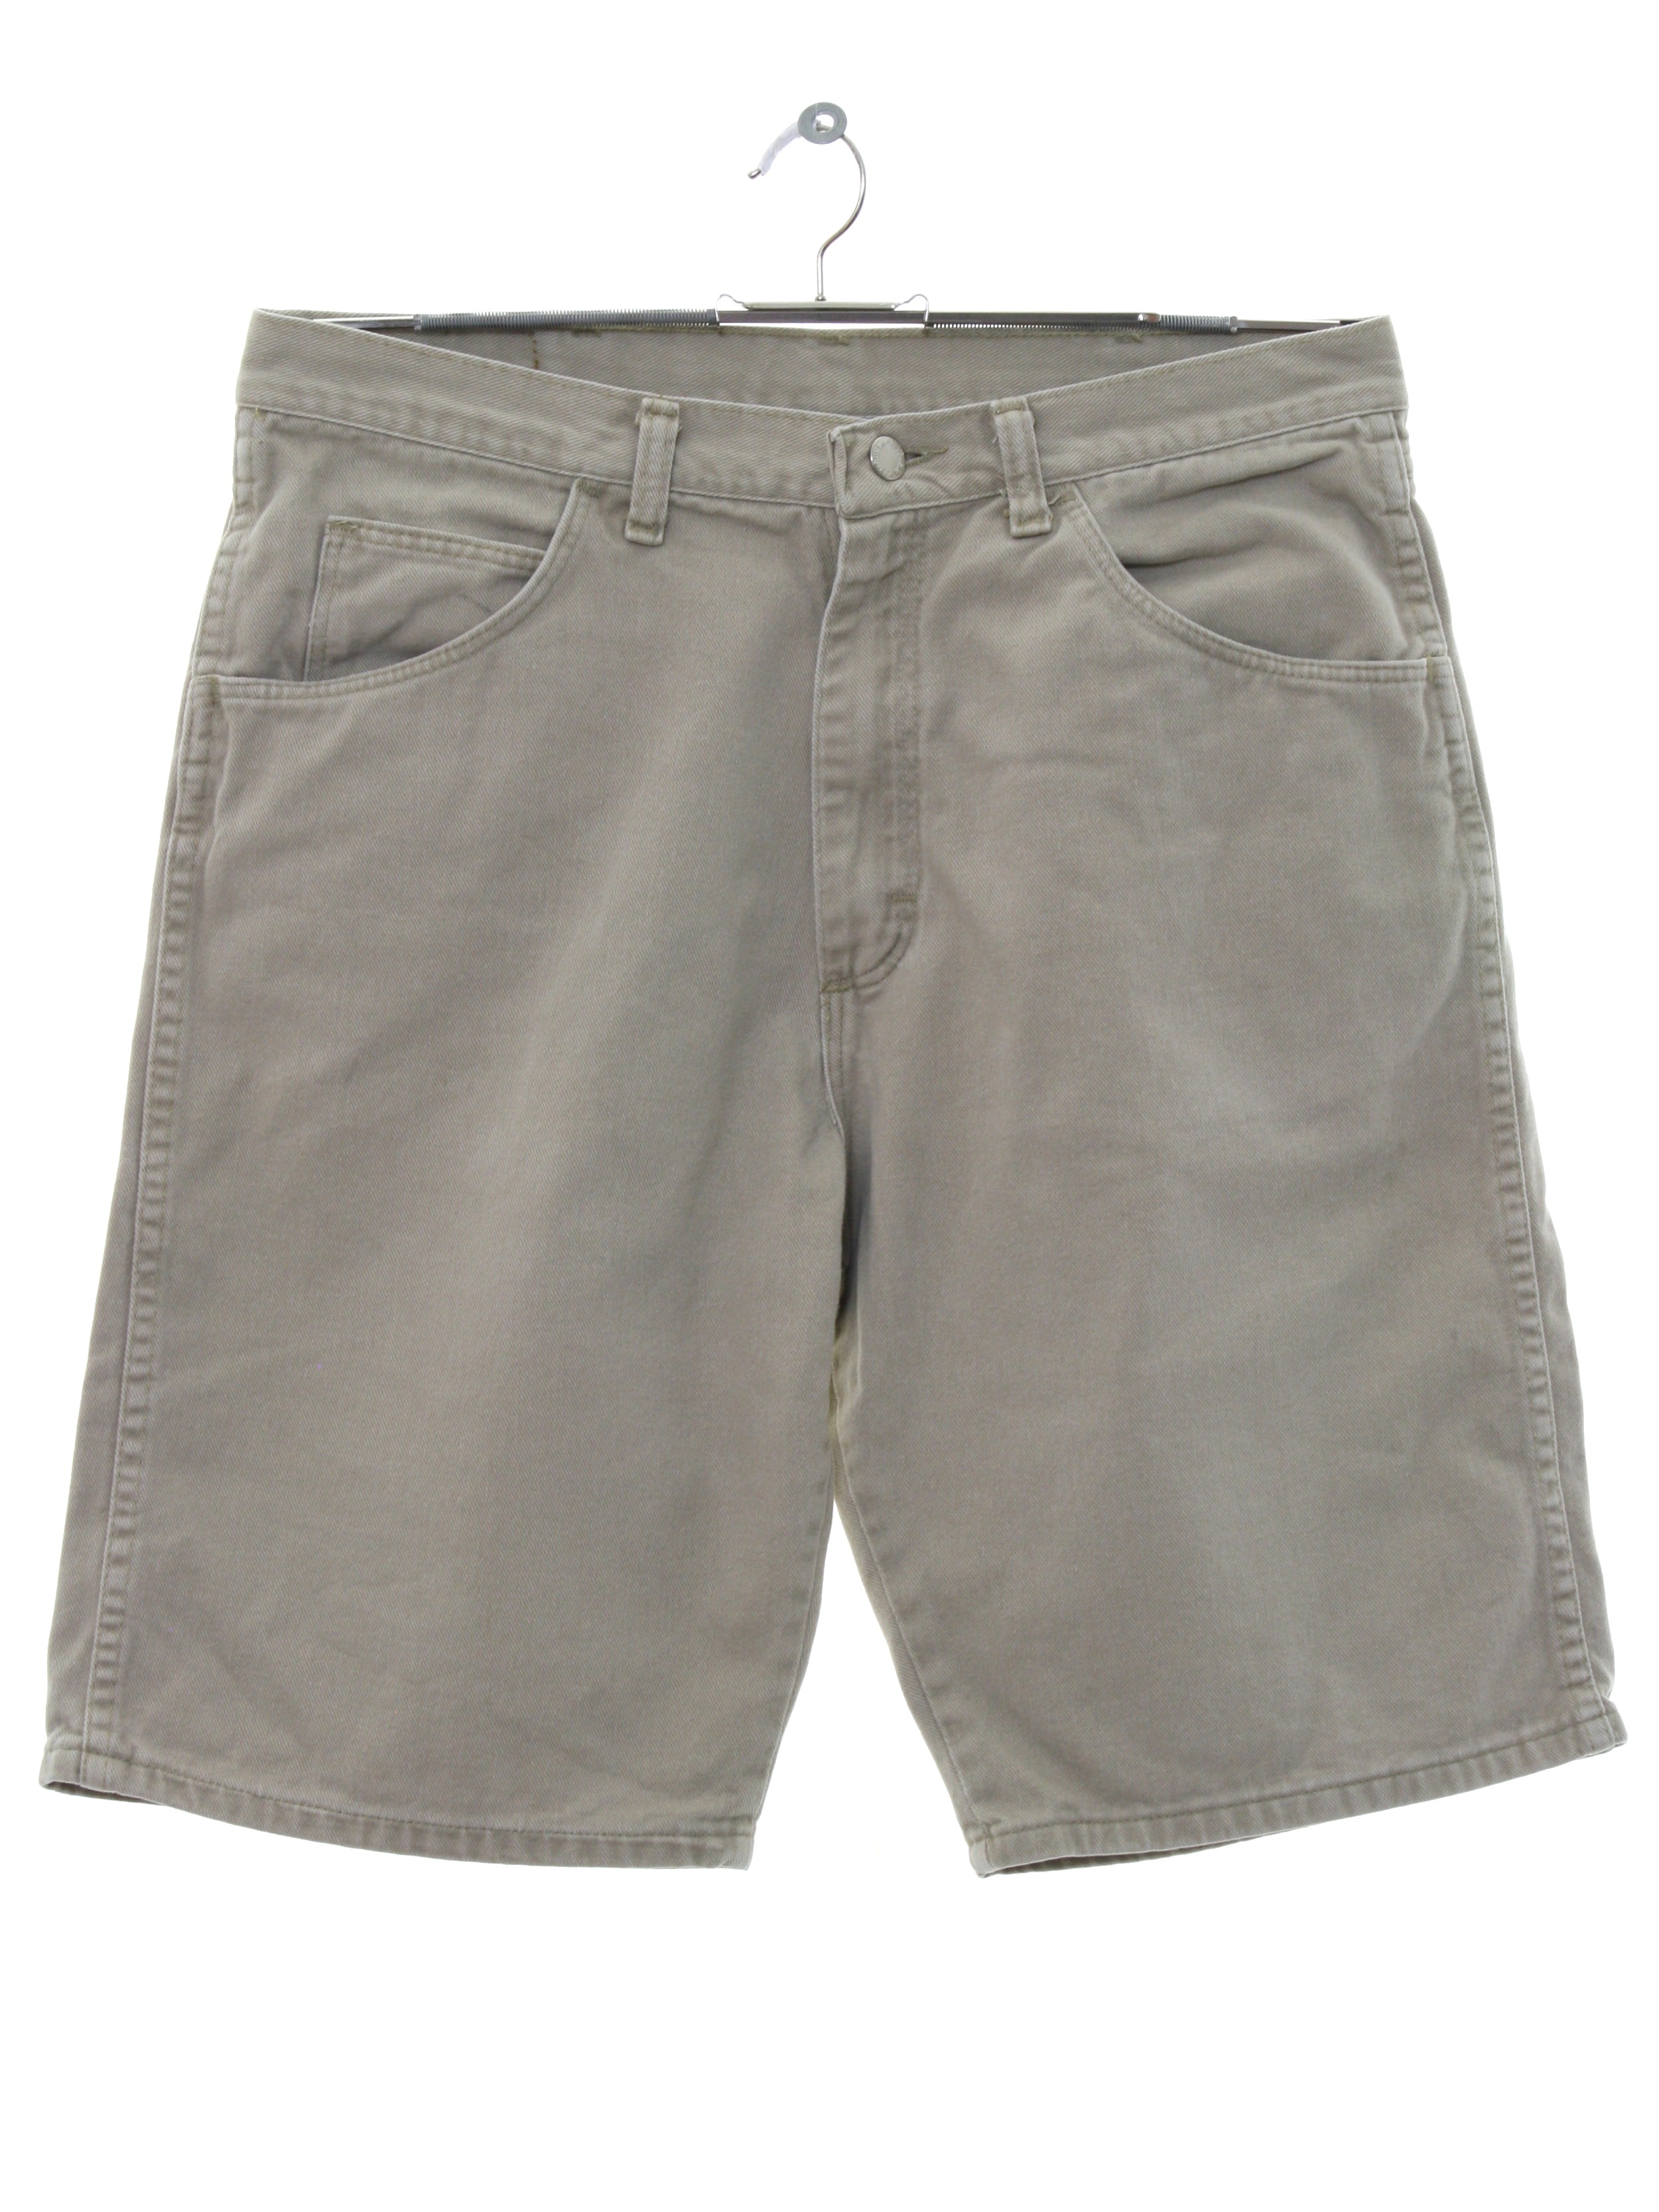 1990's Shorts (Wrangler): 90s -Wrangler- Mens light tan background ...